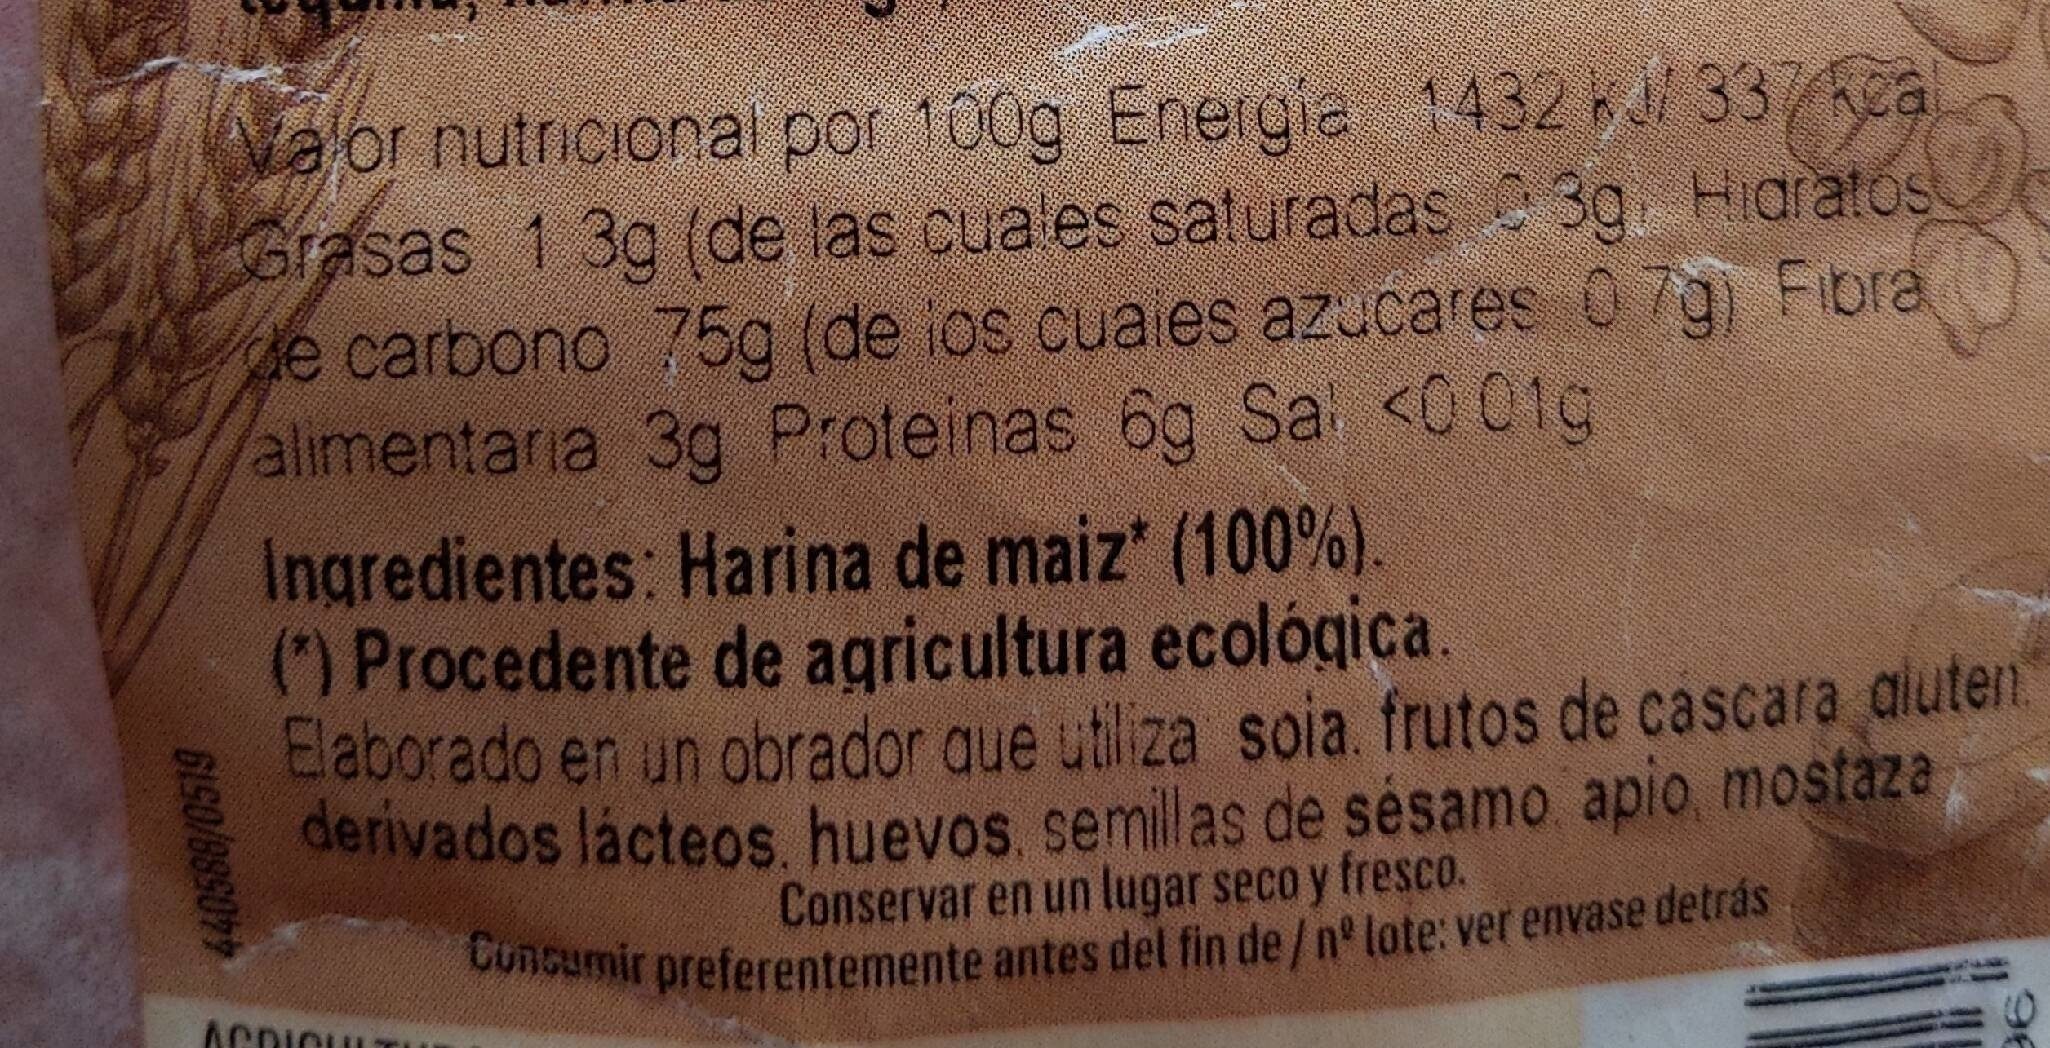 Harina de maiz - Información nutricional